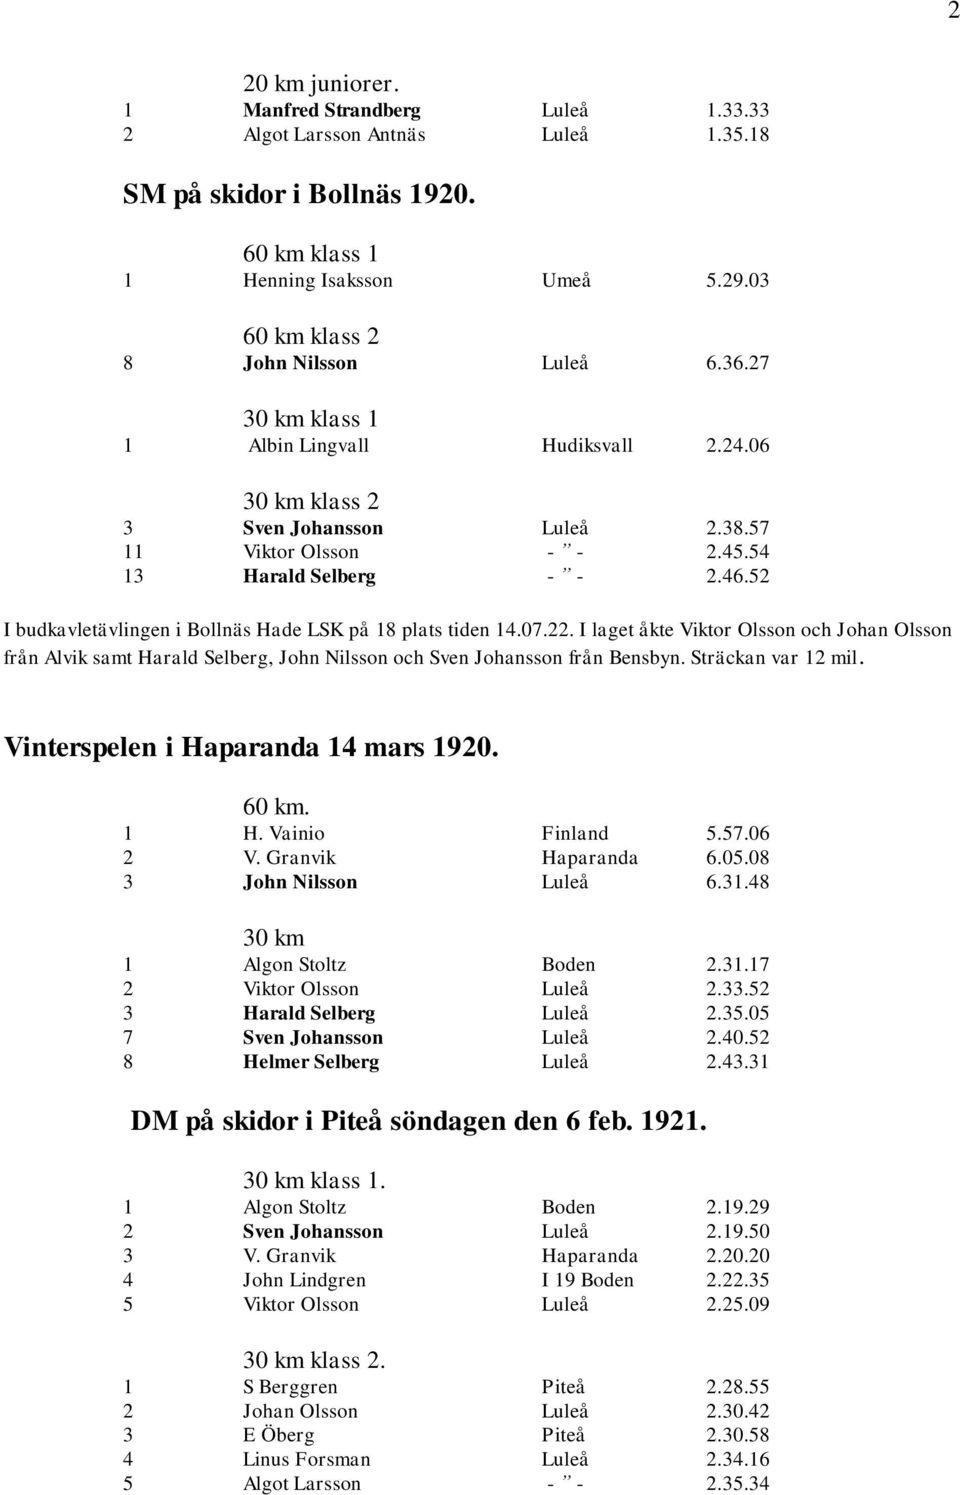 52 I budkavletävlingen i Bollnäs Hade LSK på 18 plats tiden 14.07.22. I laget åkte Viktor Olsson och Johan Olsson från Alvik samt Harald Selberg, John Nilsson och Sven Johansson från Bensbyn.